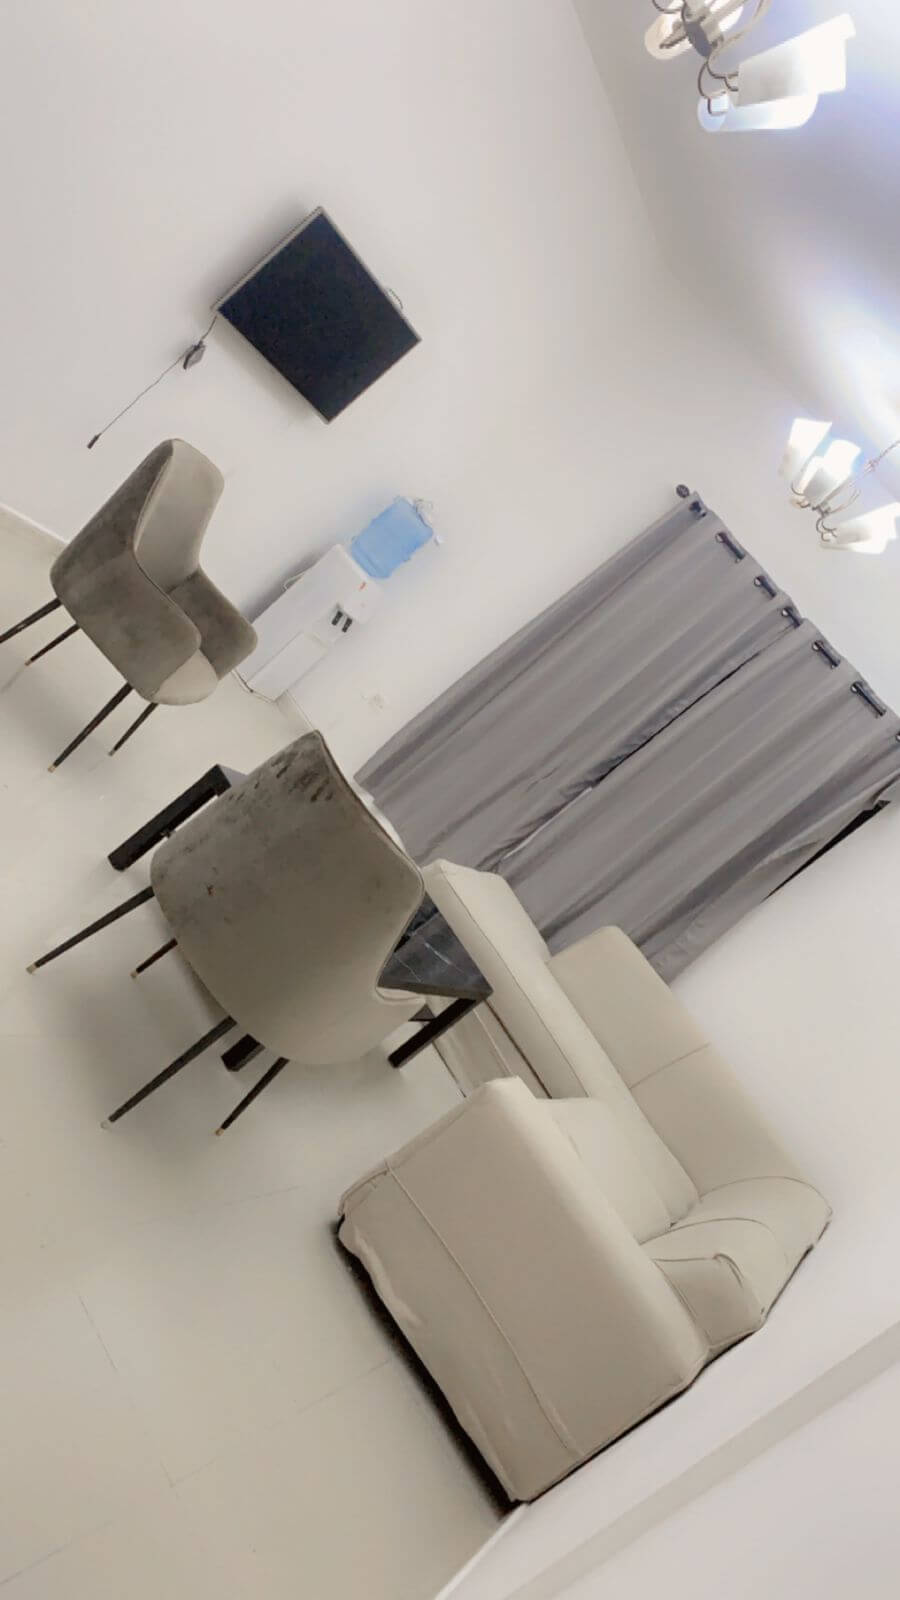 للإيجار شقة مفروشة في الشارقة التعاون |For rent Furnished apartment in Sharjah Al Taawun